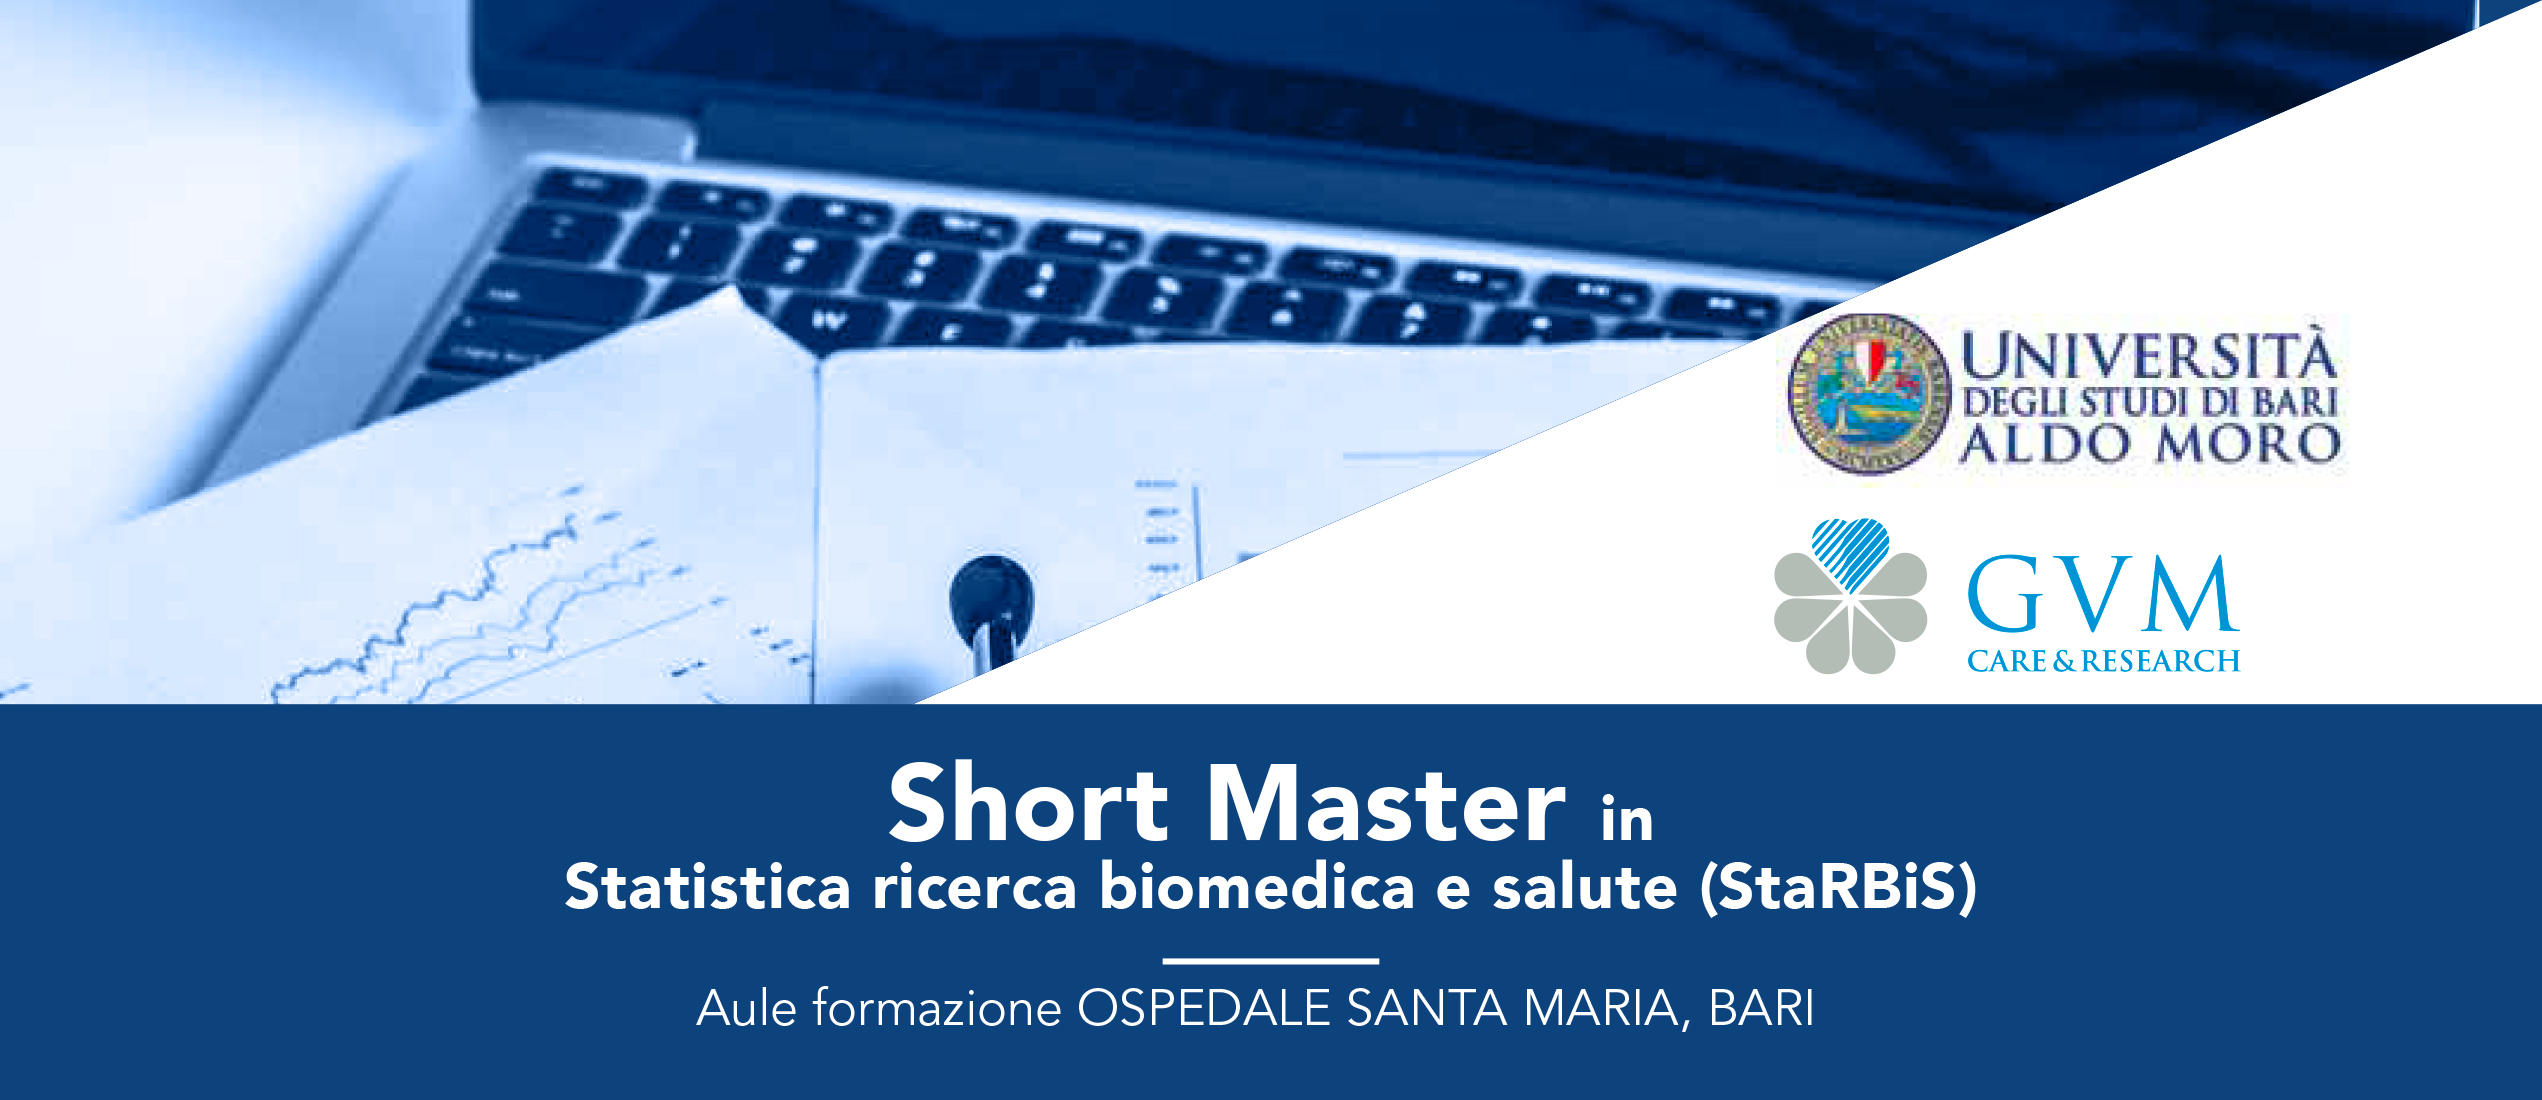 Short Master in Statistica ricerca biomedica e salute